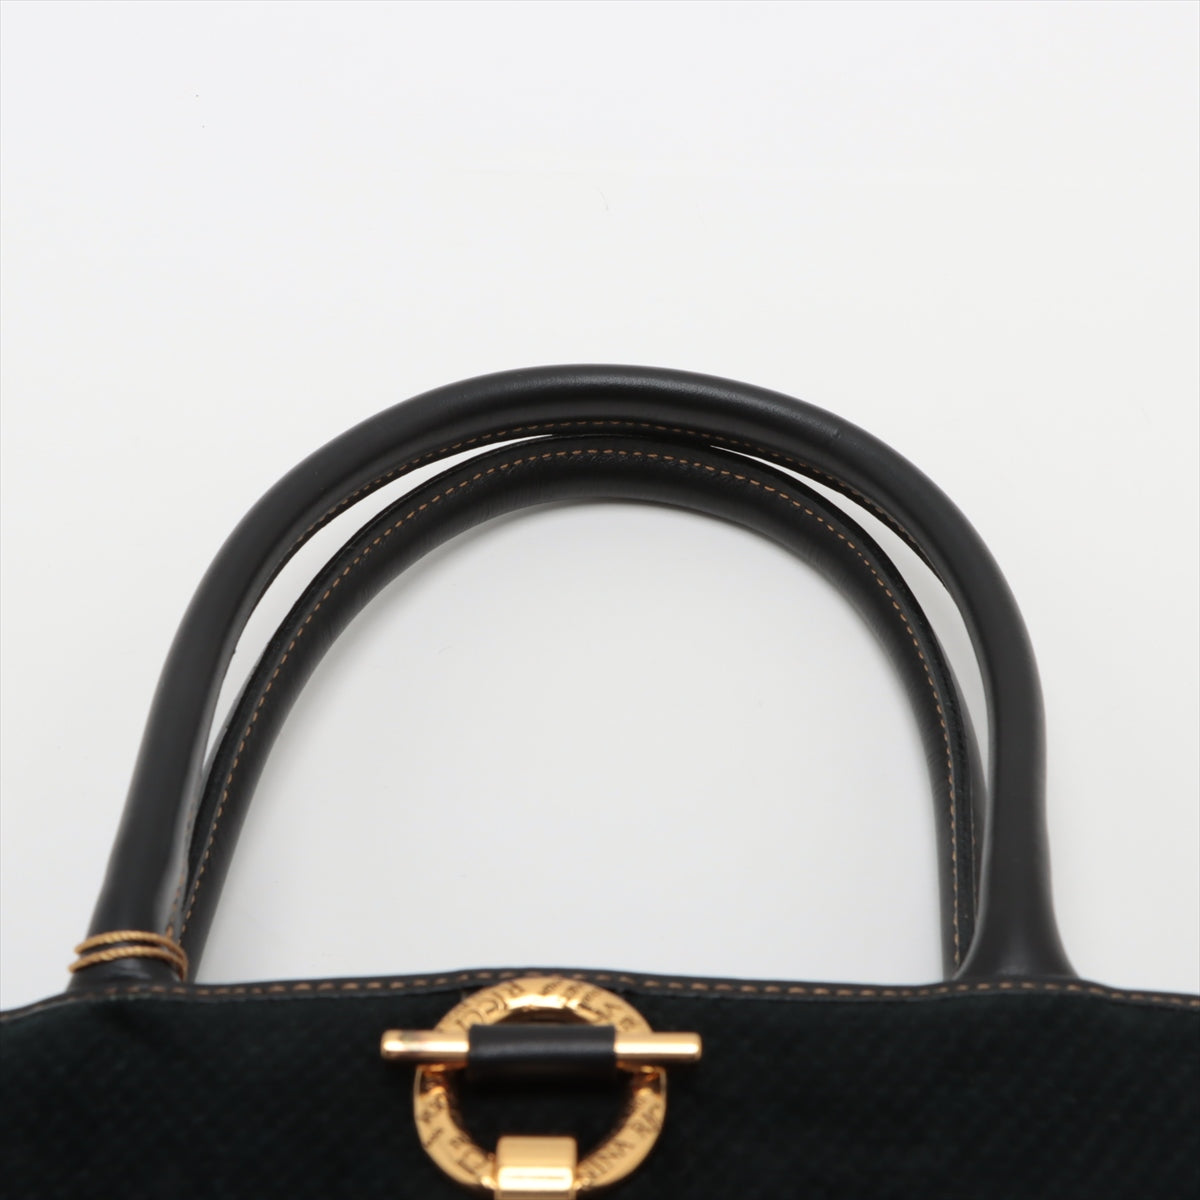 Black Handbag Black Handbag Black Handbag Black Handbags